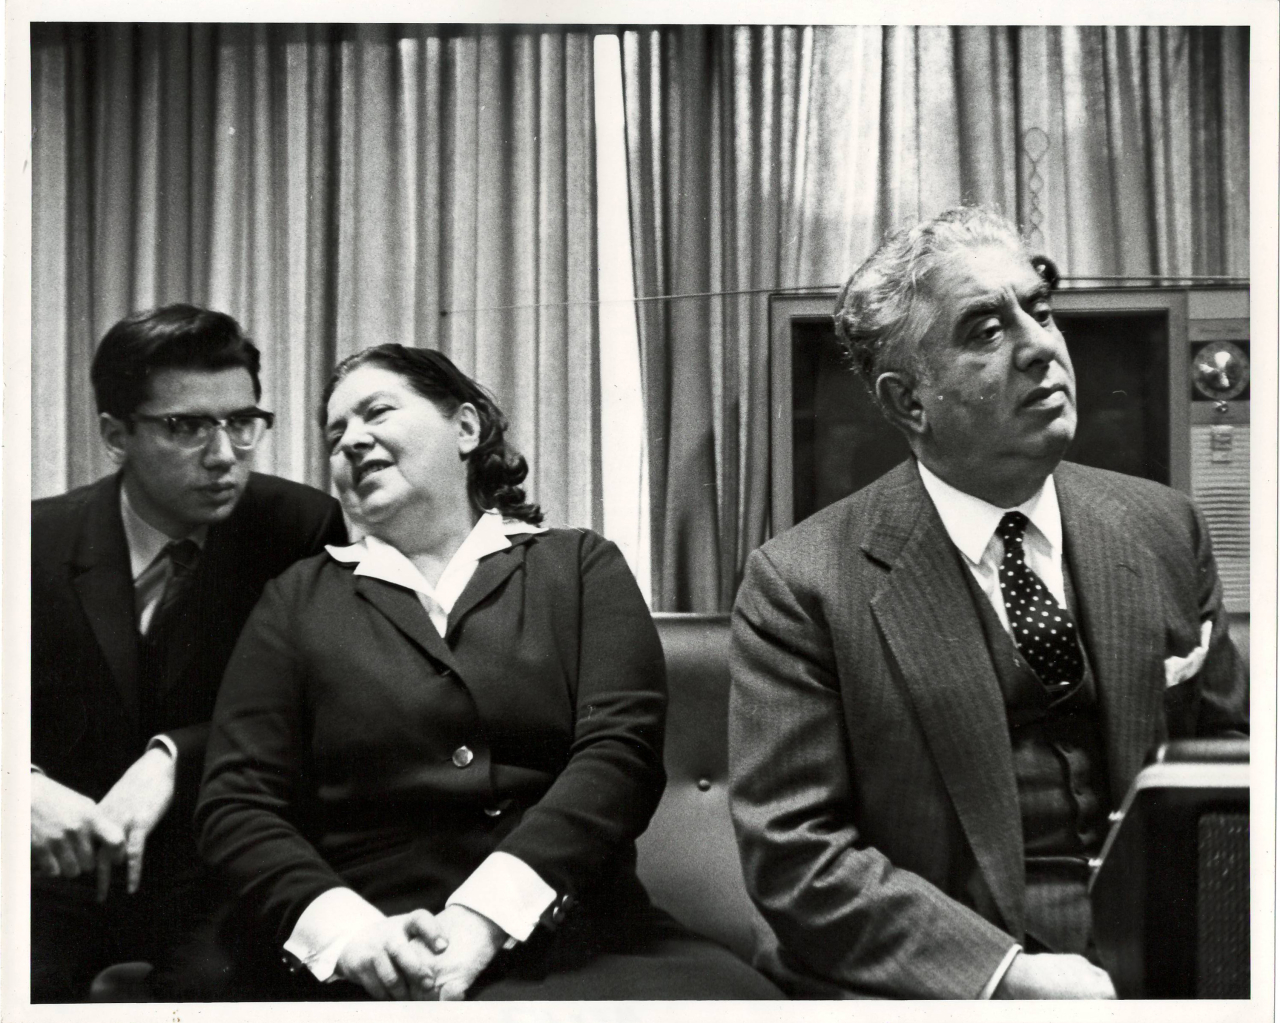 Լուսանկար. Ա. Խաչատրյանը կնոջ՝ Ն. Մակարովայի, իրենց որդու՝ Կարենի հետ ՄԱԿ-ի գրասենյակում մամլո ասուլիսի ժամանակ